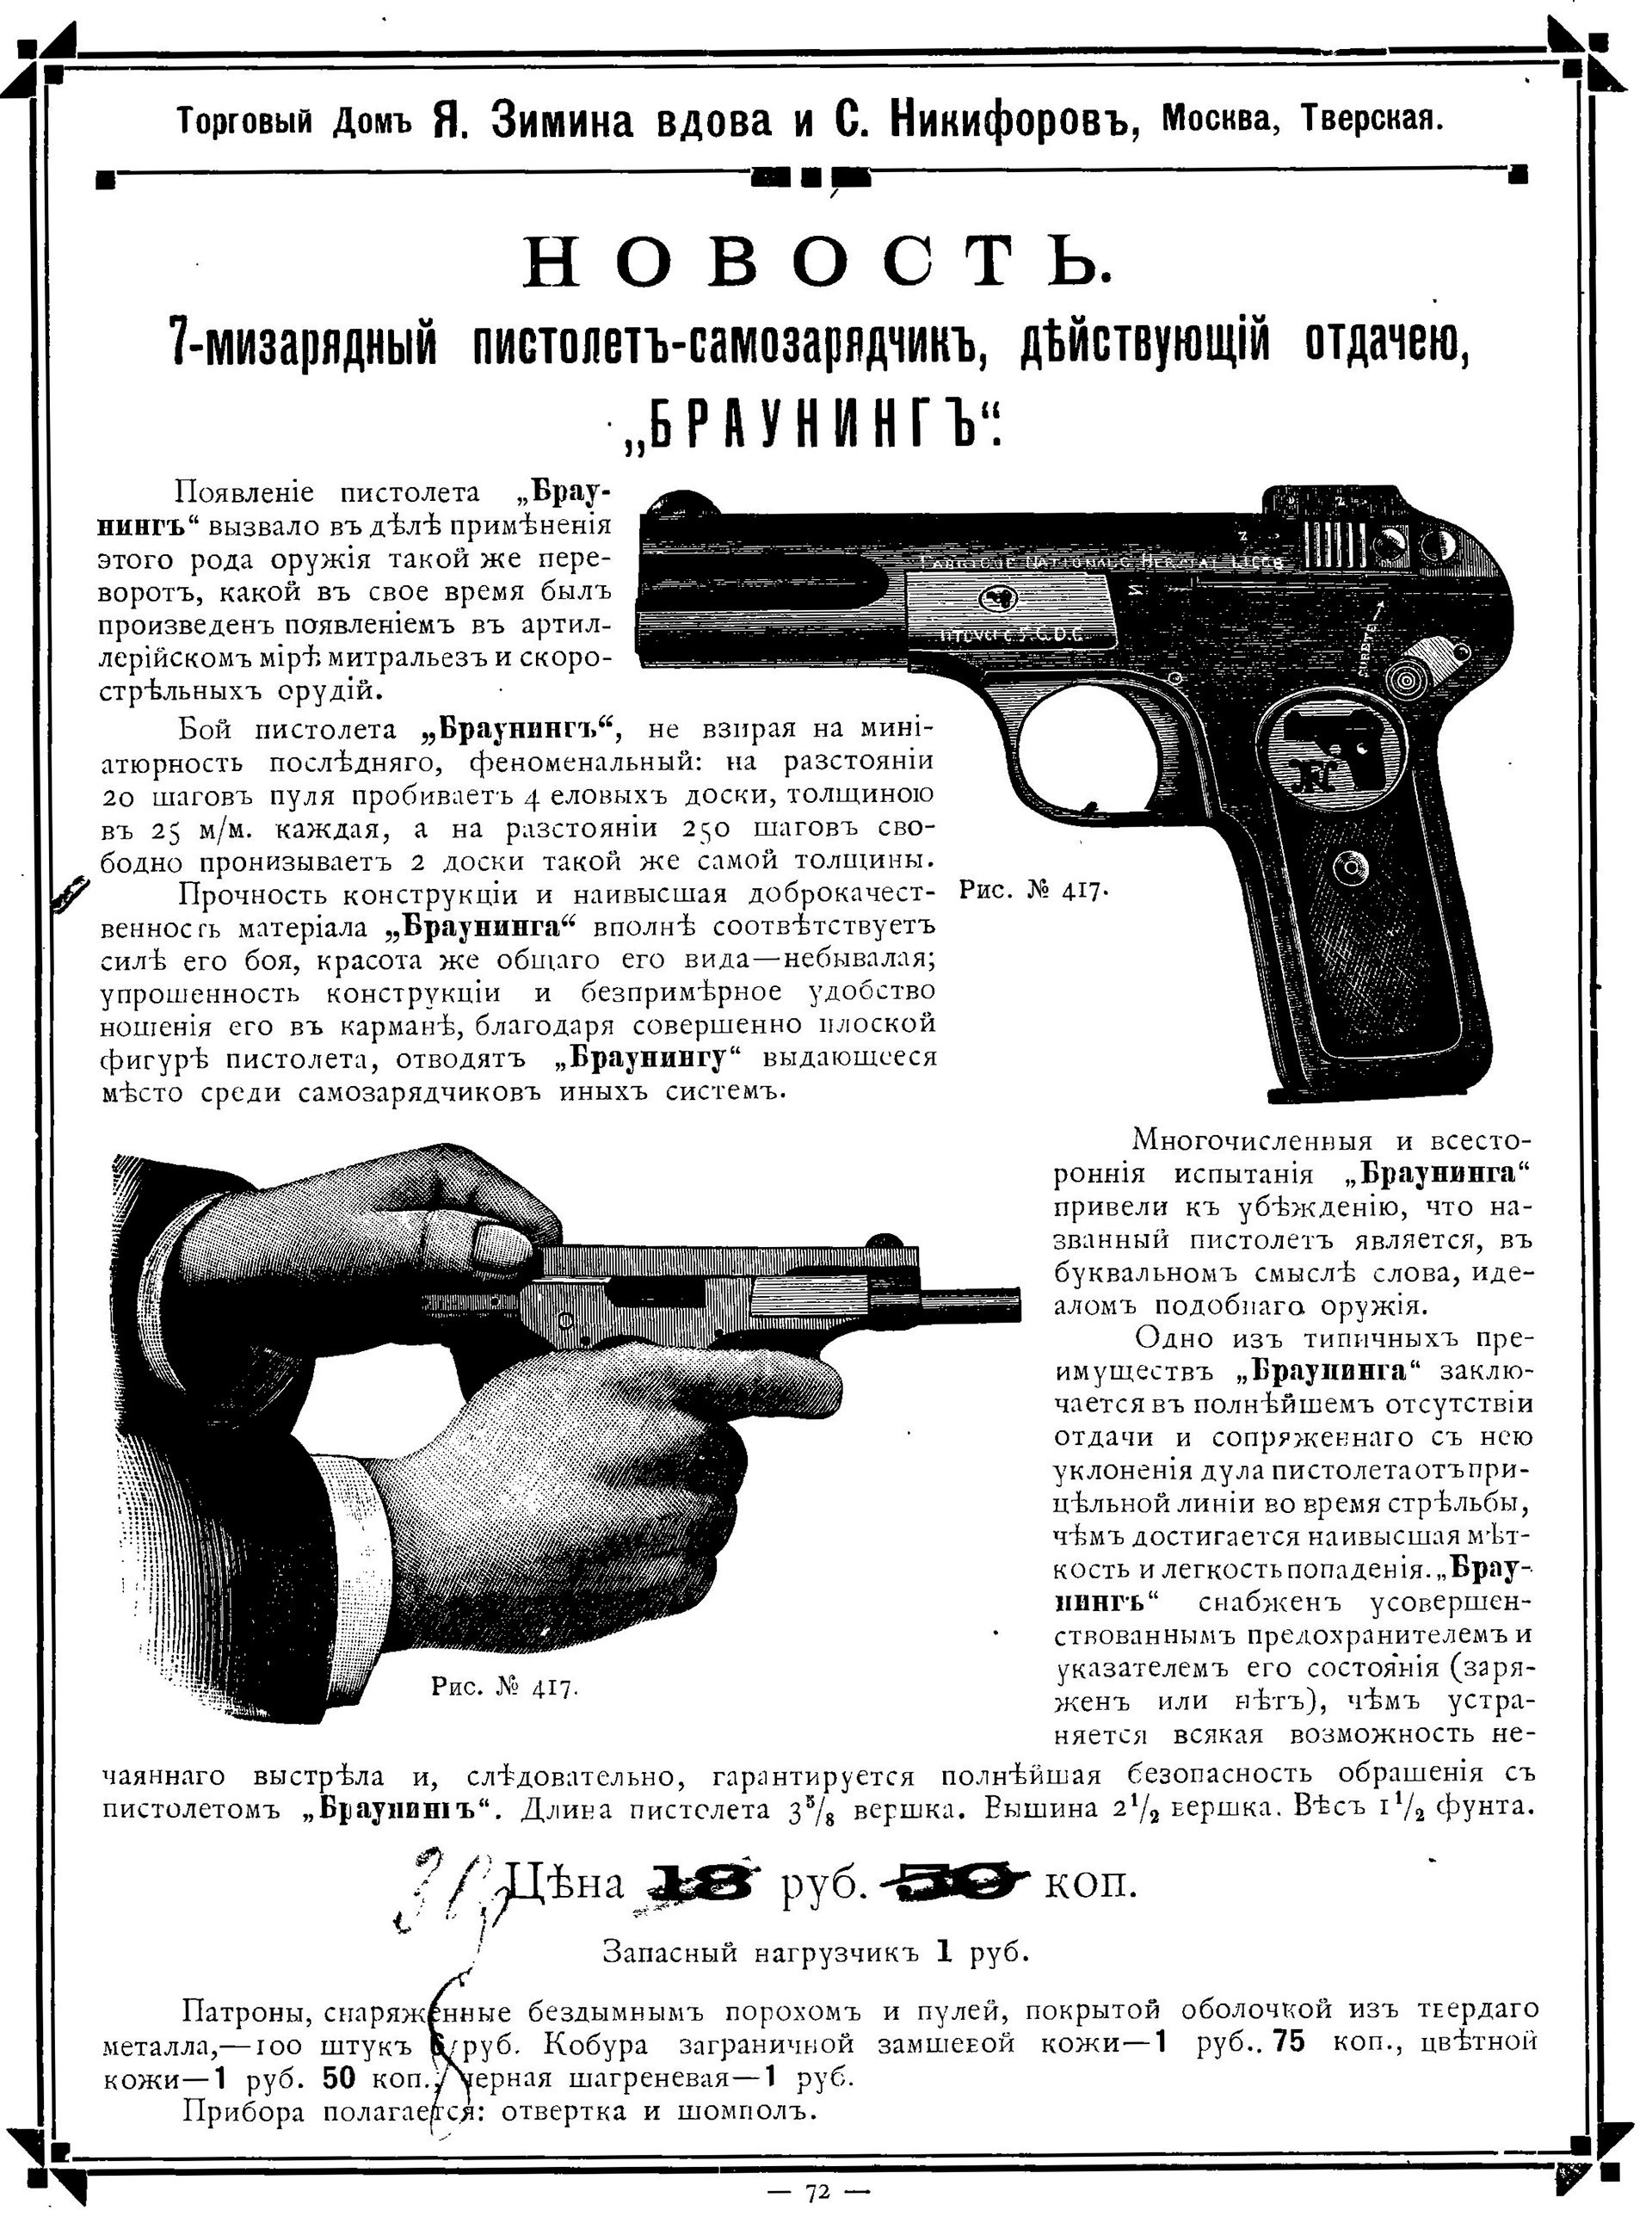 Koran-koran mengiklankan model-model pistol dari merek seperti Brownings, Nagants, Mausers, dan lainnya. Mereka sangat populer karena murah.